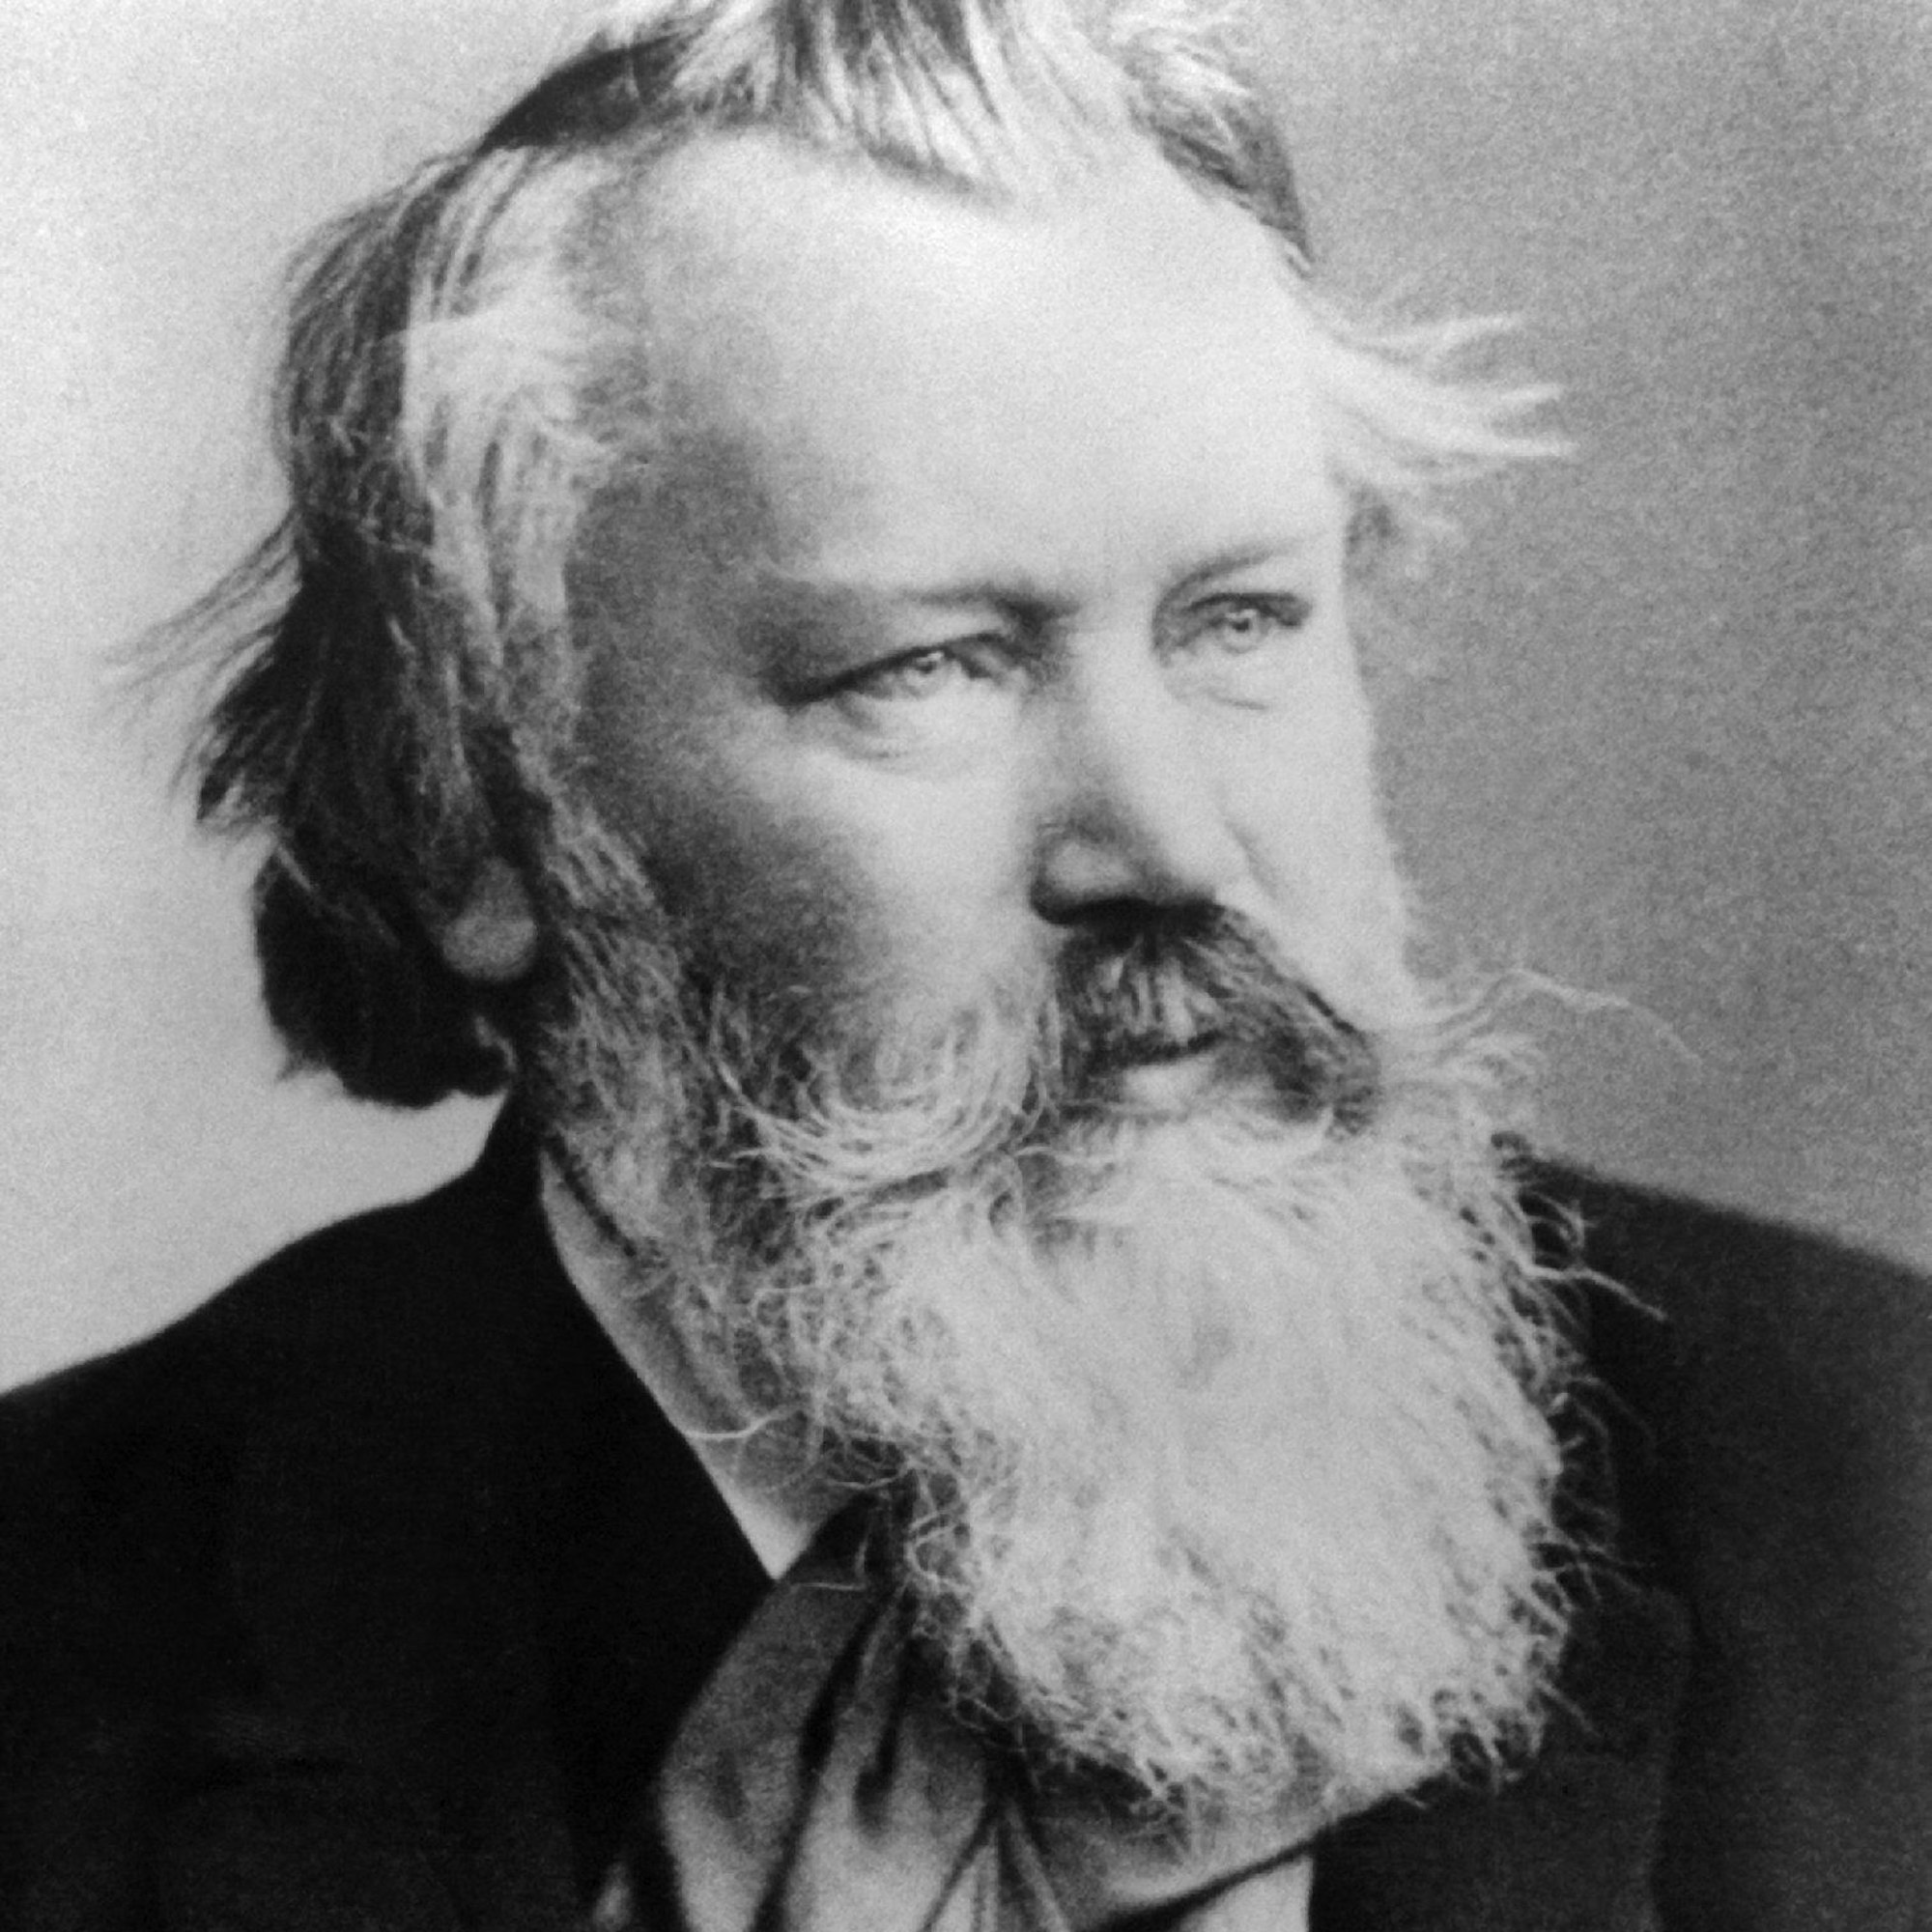 ARCHIV - Der deutsche Komponist Johannes Brahms (Foto um 1889) starb am 3. April 1897 in Wien im Alter von 63 Jahren.